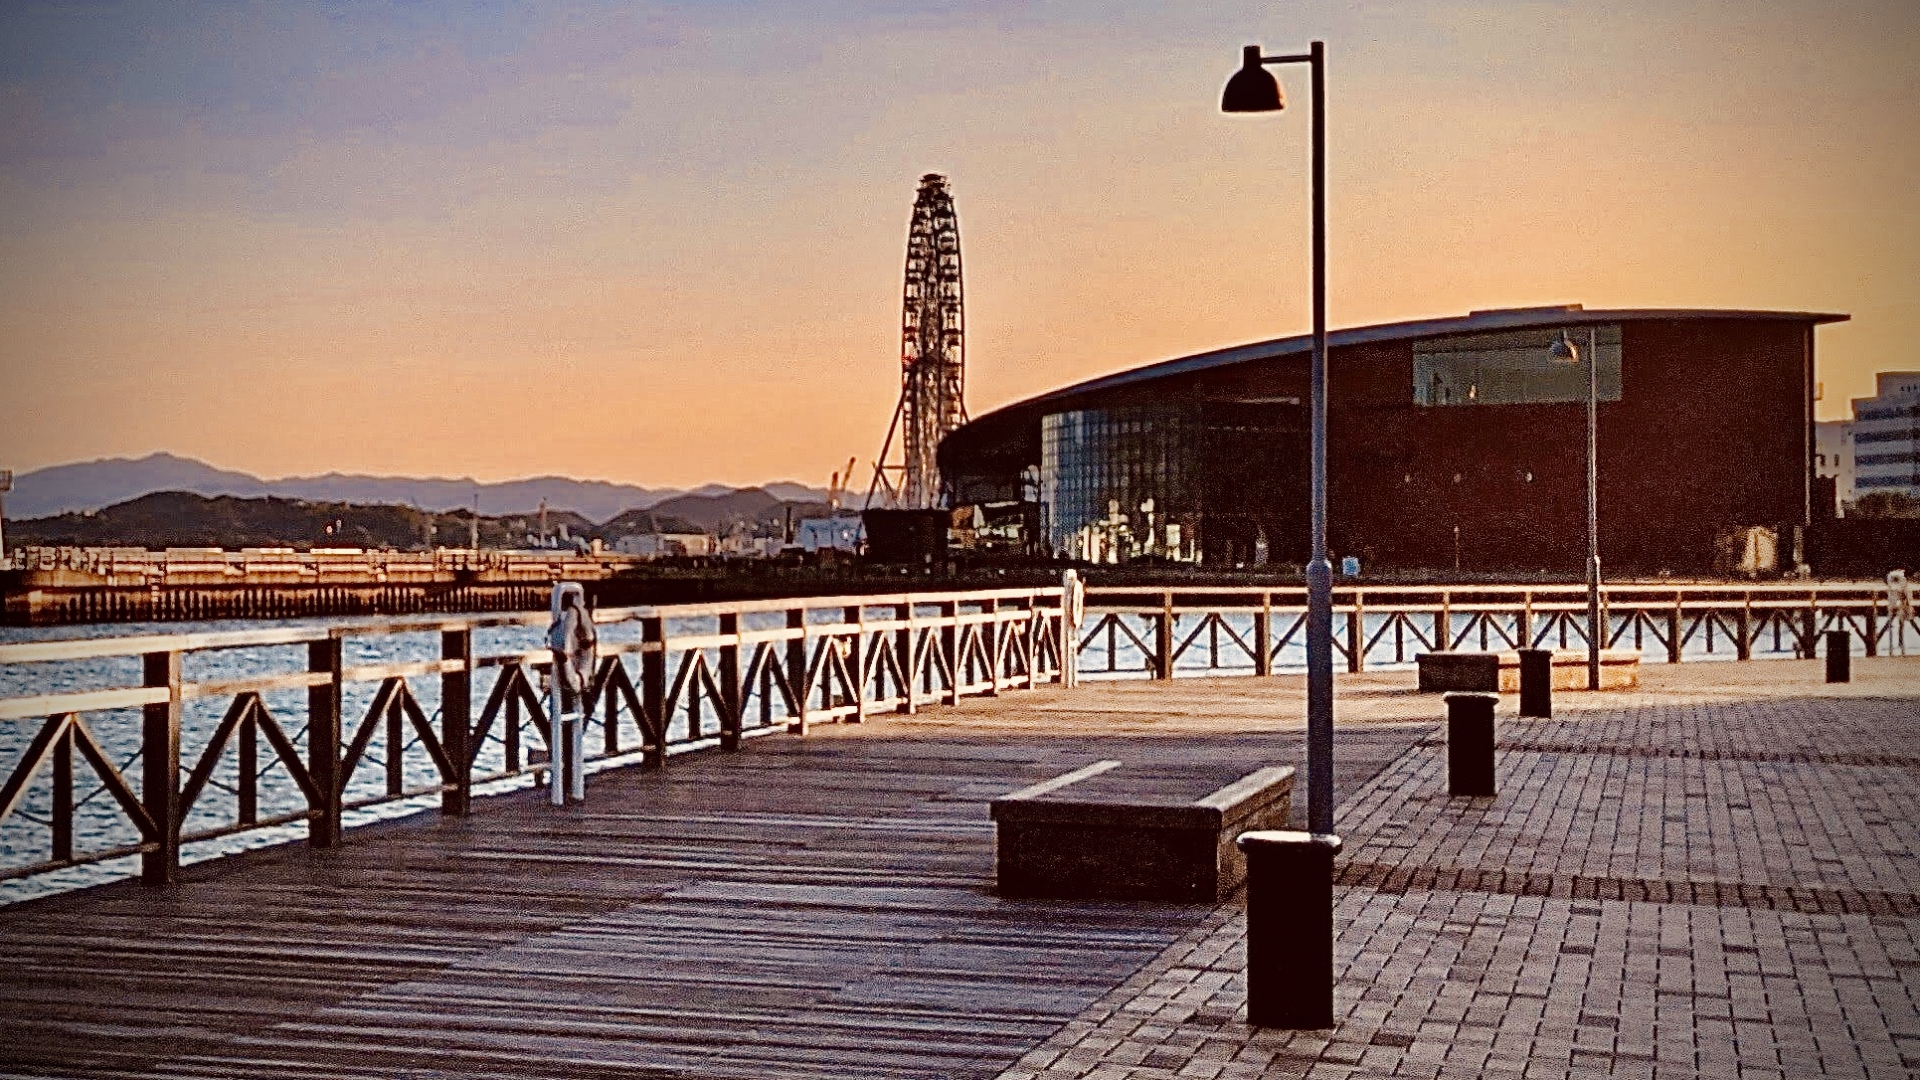 「市立しものせき水族館 海響館」もある下関港の風景